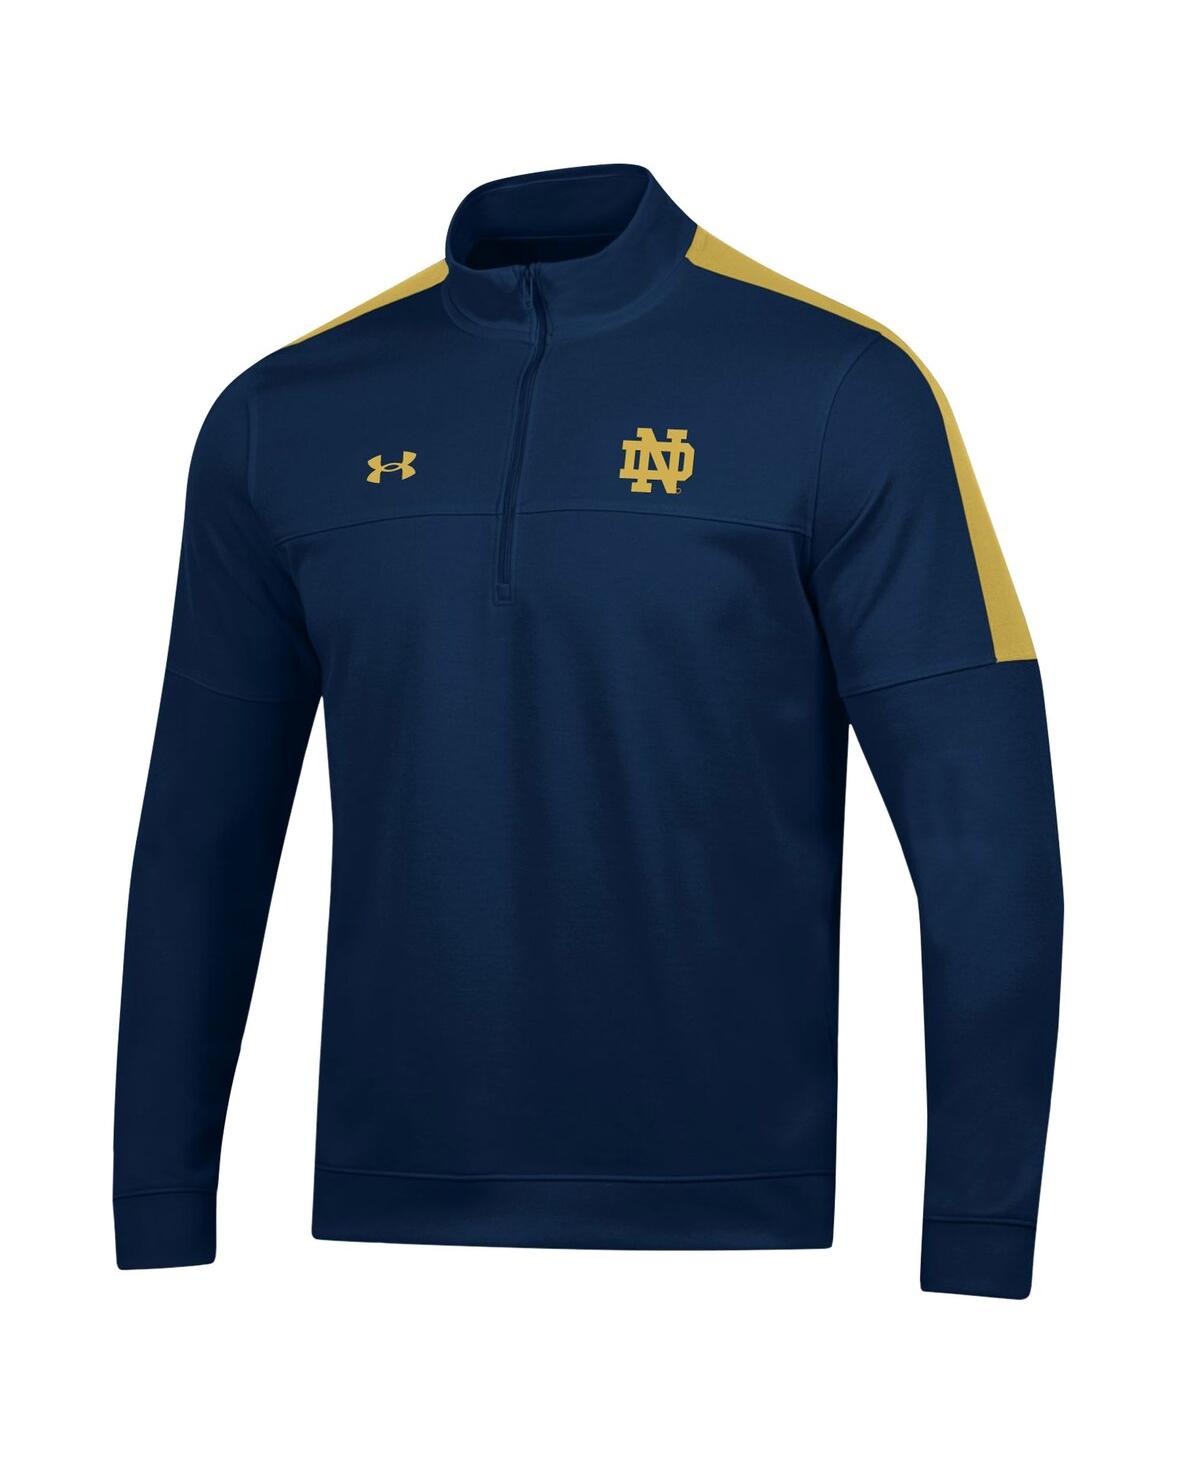 Shop Under Armour Men's  Navy Notre Dame Fighting Irish Midlayer Half-zip Jacket